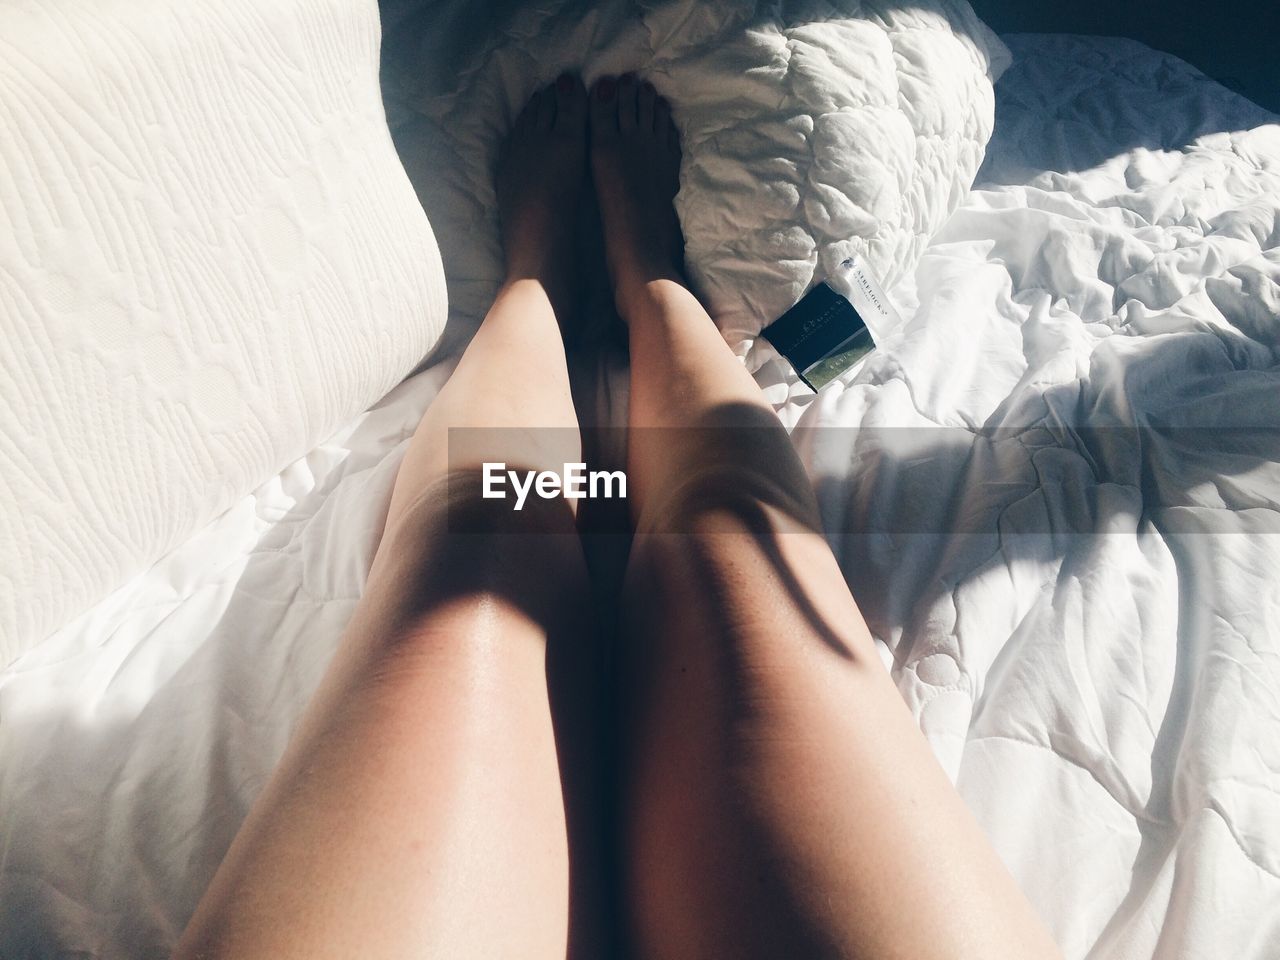 Sunlight falling on woman legs in bed